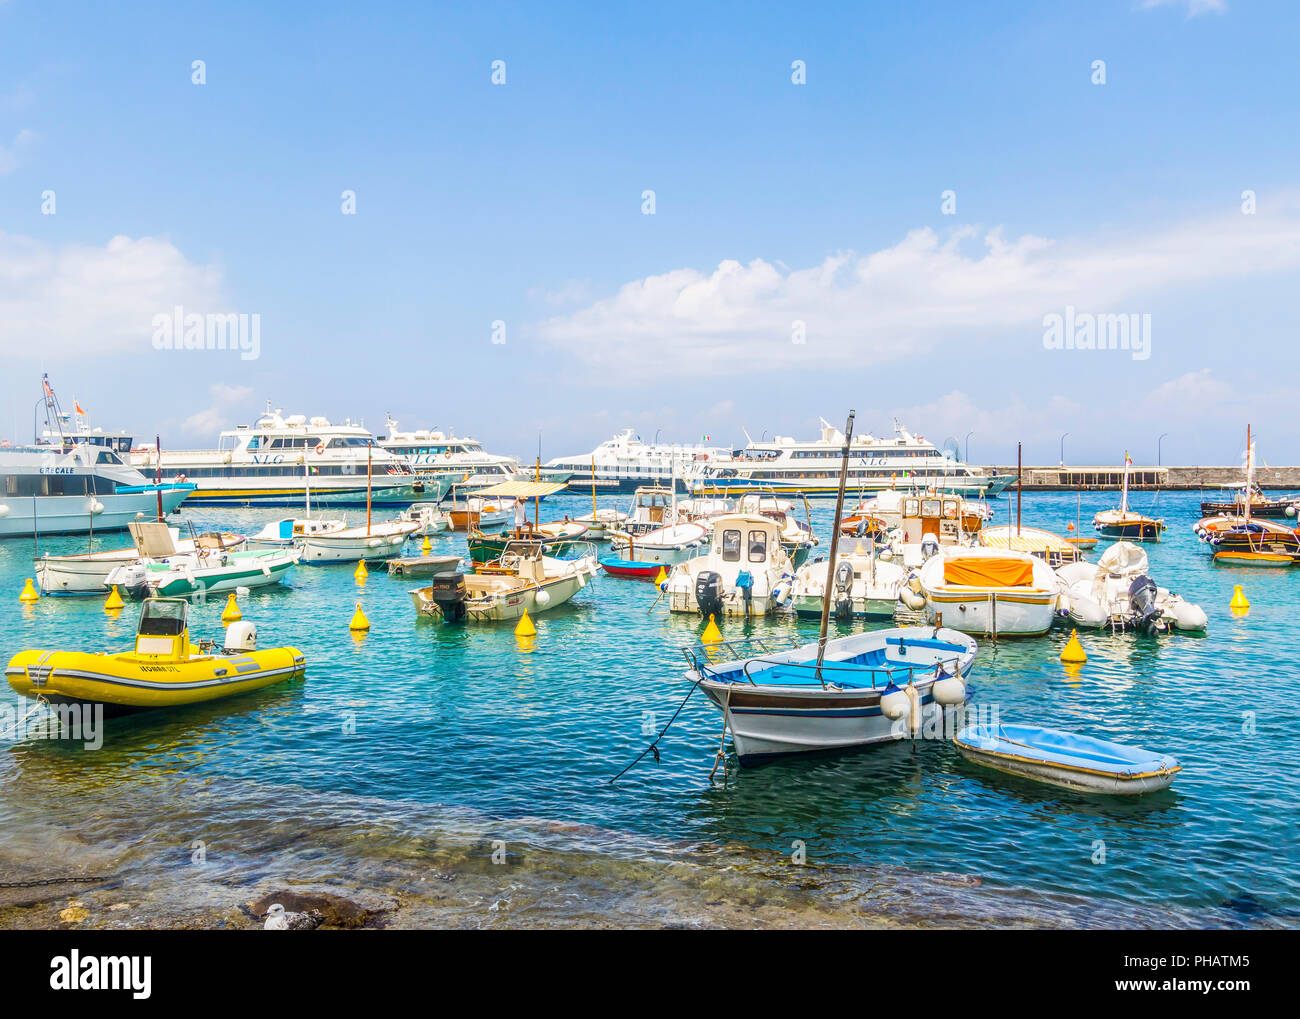 Porto di Capri, Marina Grande, Isola di Capri le barche devono vedere le attrazioni principali, la vita migliore, happy Times vacanza spiaggia barche sole esplorare le navi Foto Stock